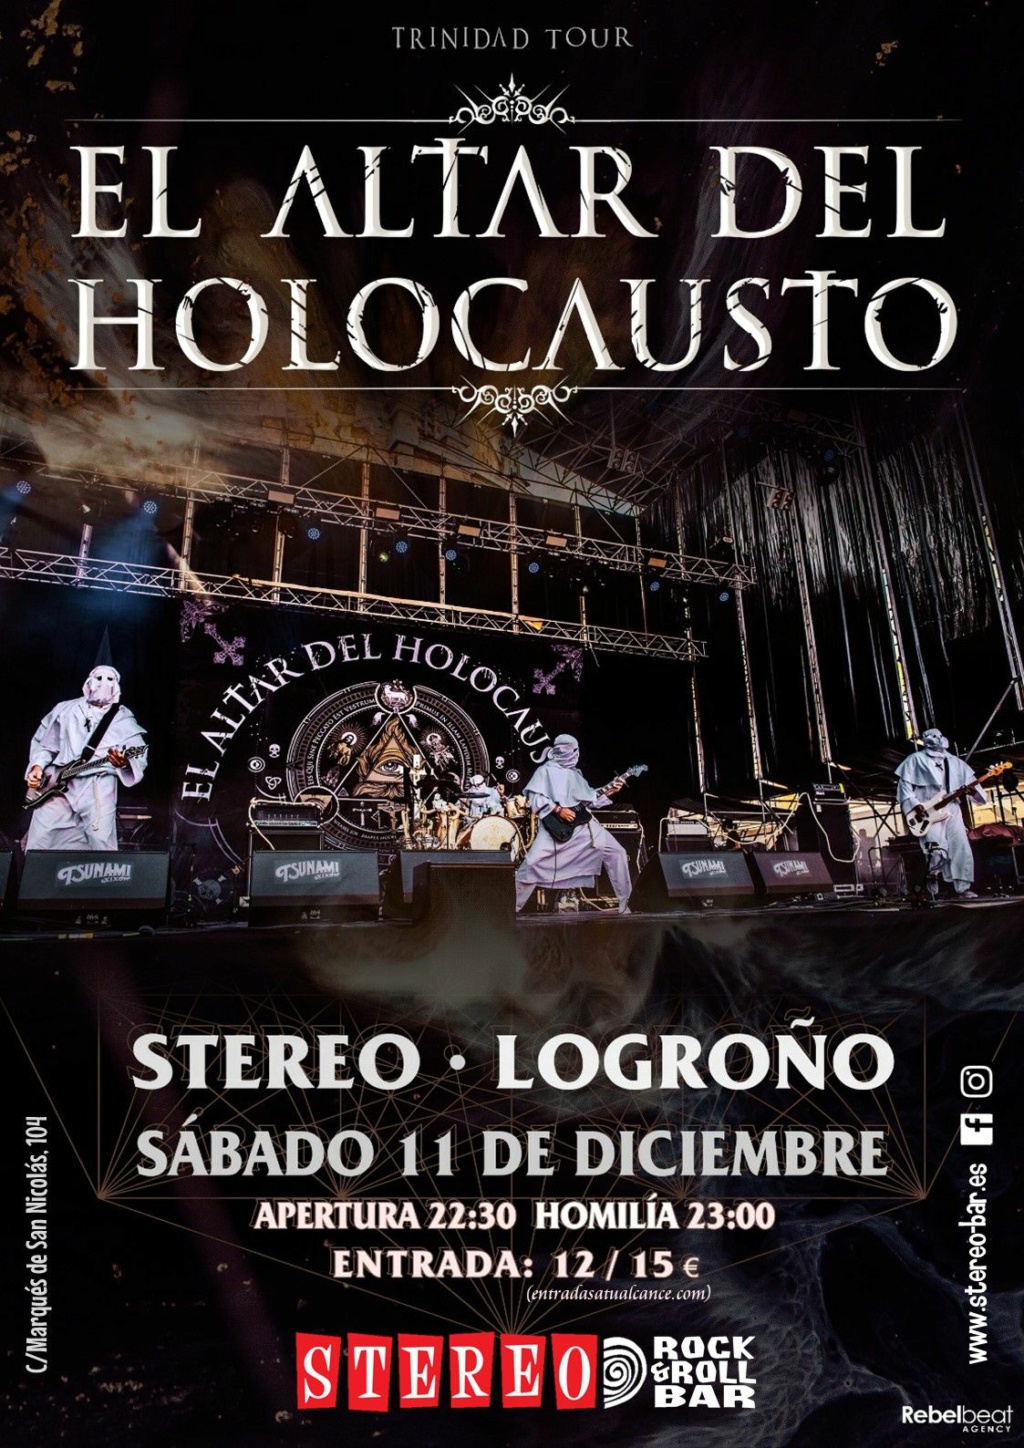 El Altar Del Holocausto: ¡¡¡Nuevas fechas para presentar ✞ T R I N I DAD !!!!! ( Viernes 1 - Resurrection Fest) - Página 18 Logroz11